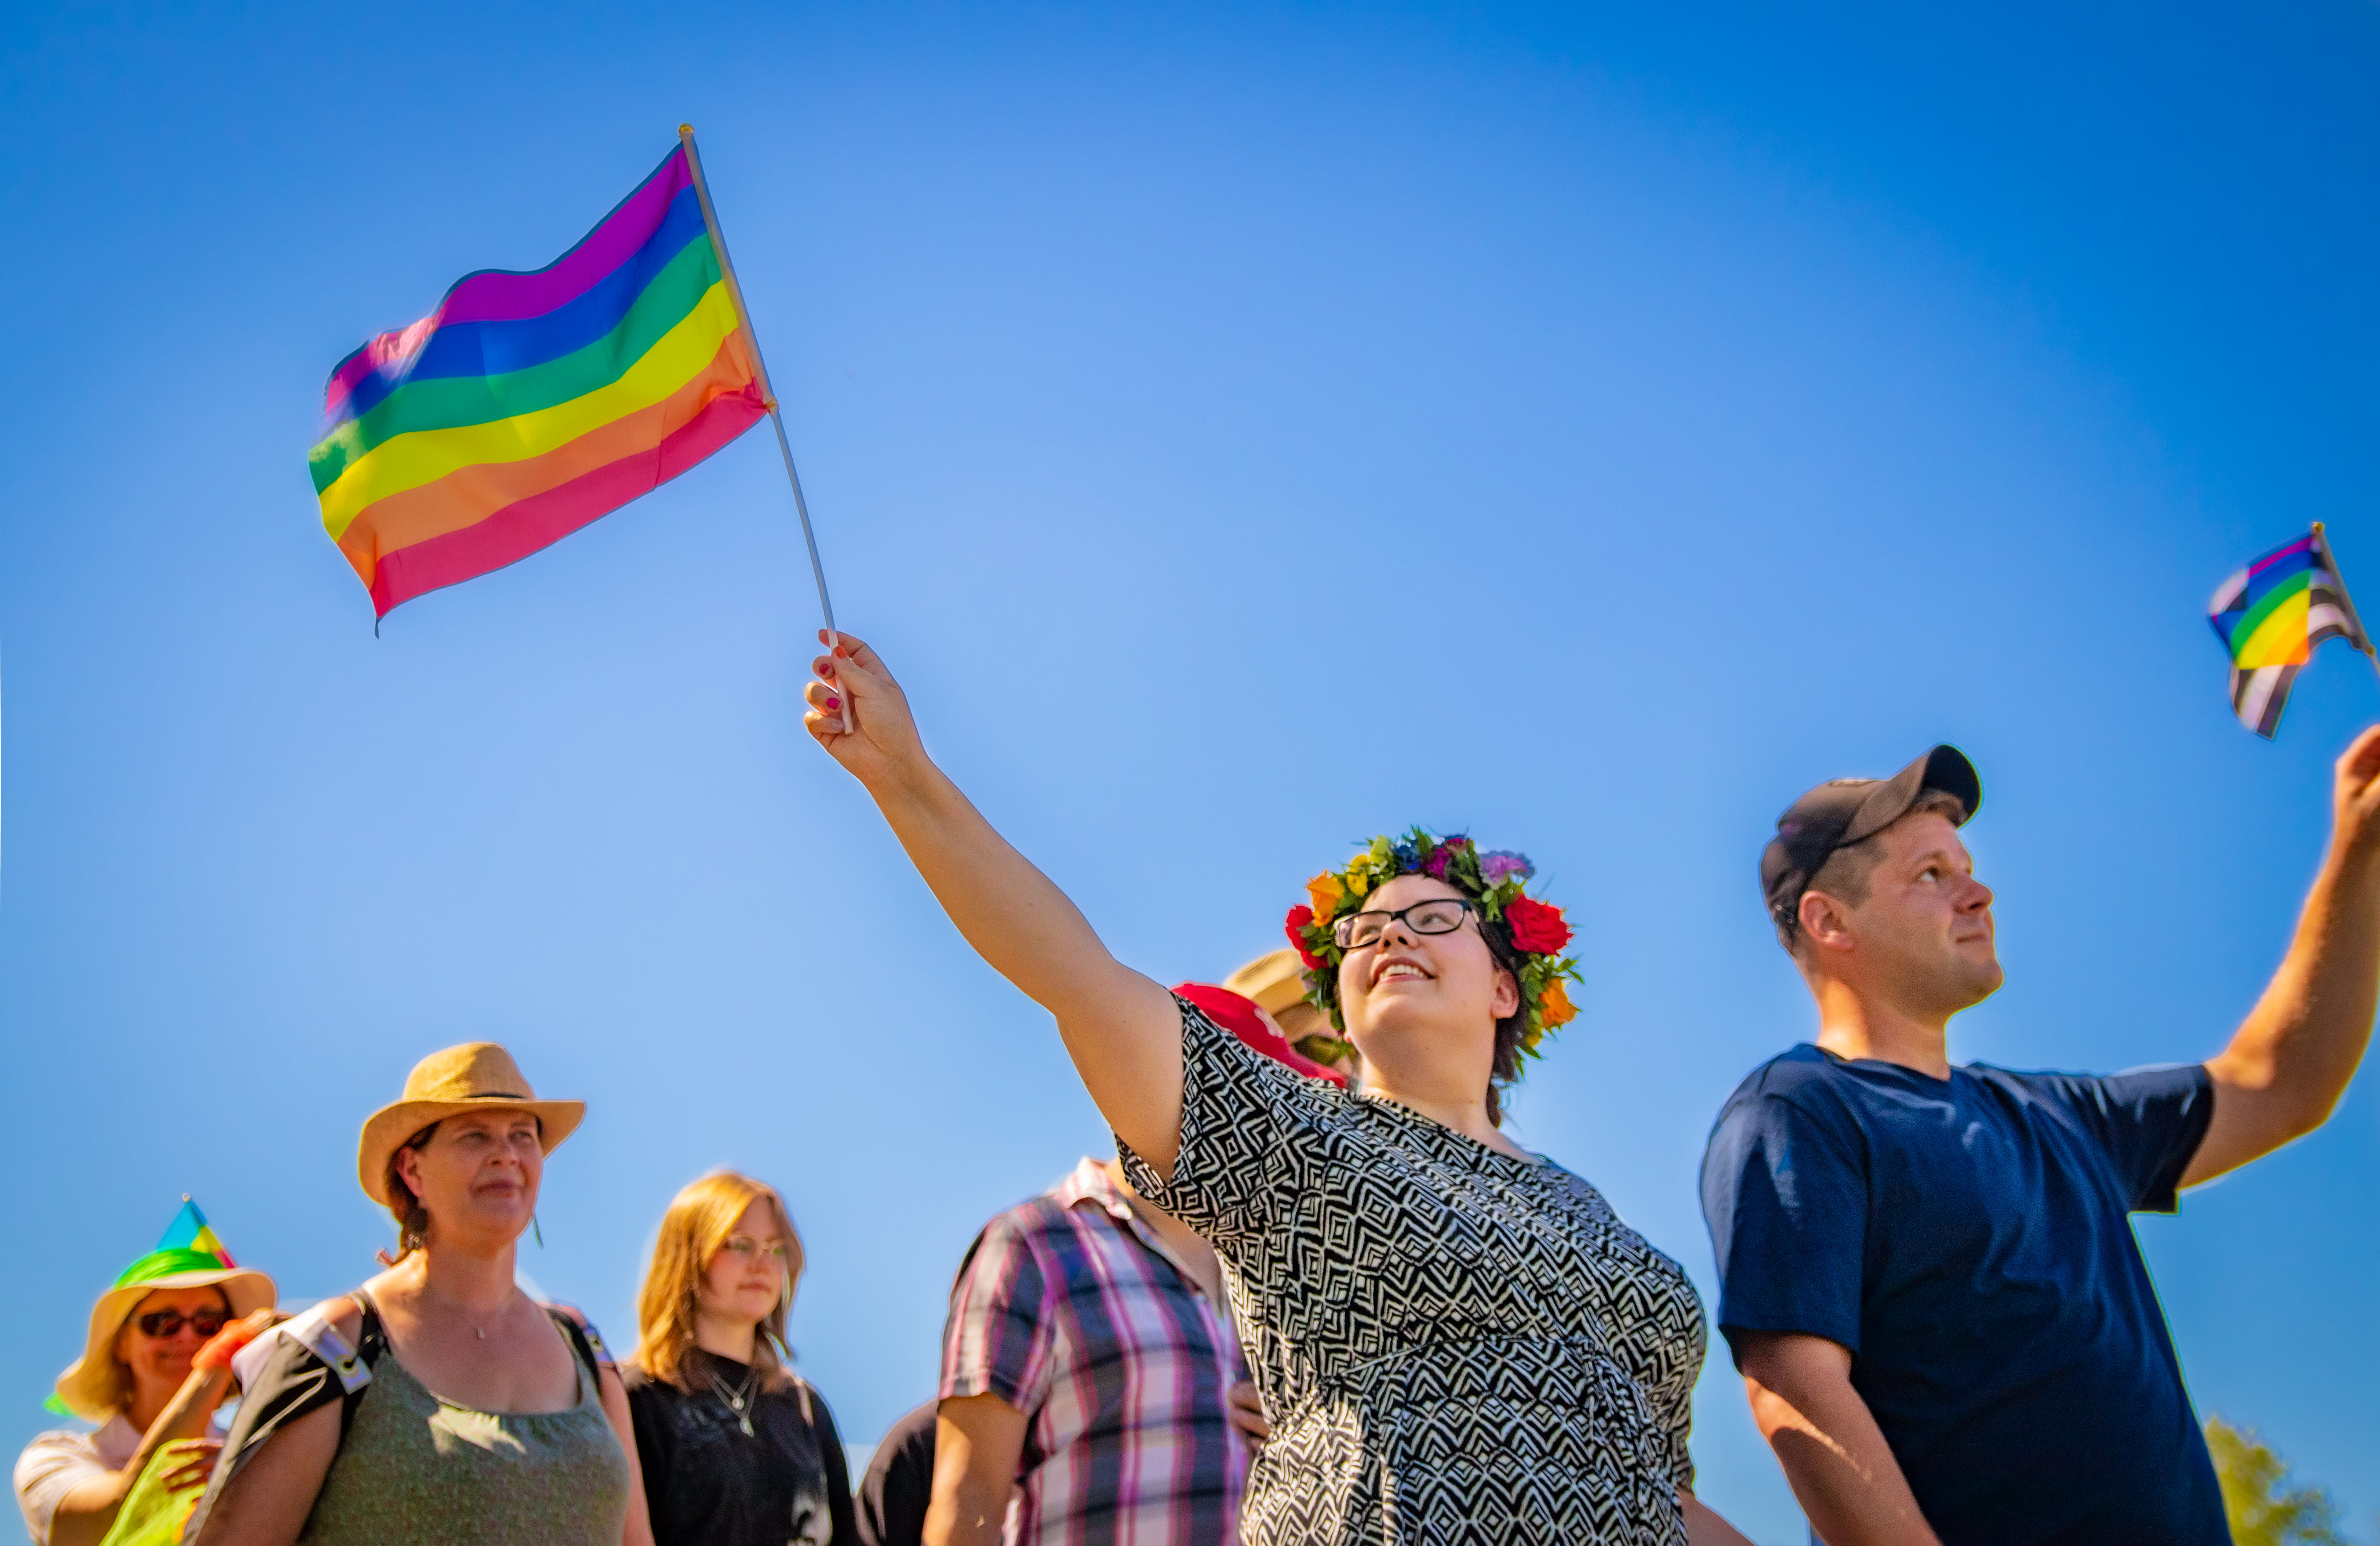 화요일 신문: 이민자들의 건강 관리 접근성, 낙태 증가, 핀란드의 동성애 혐오 문제